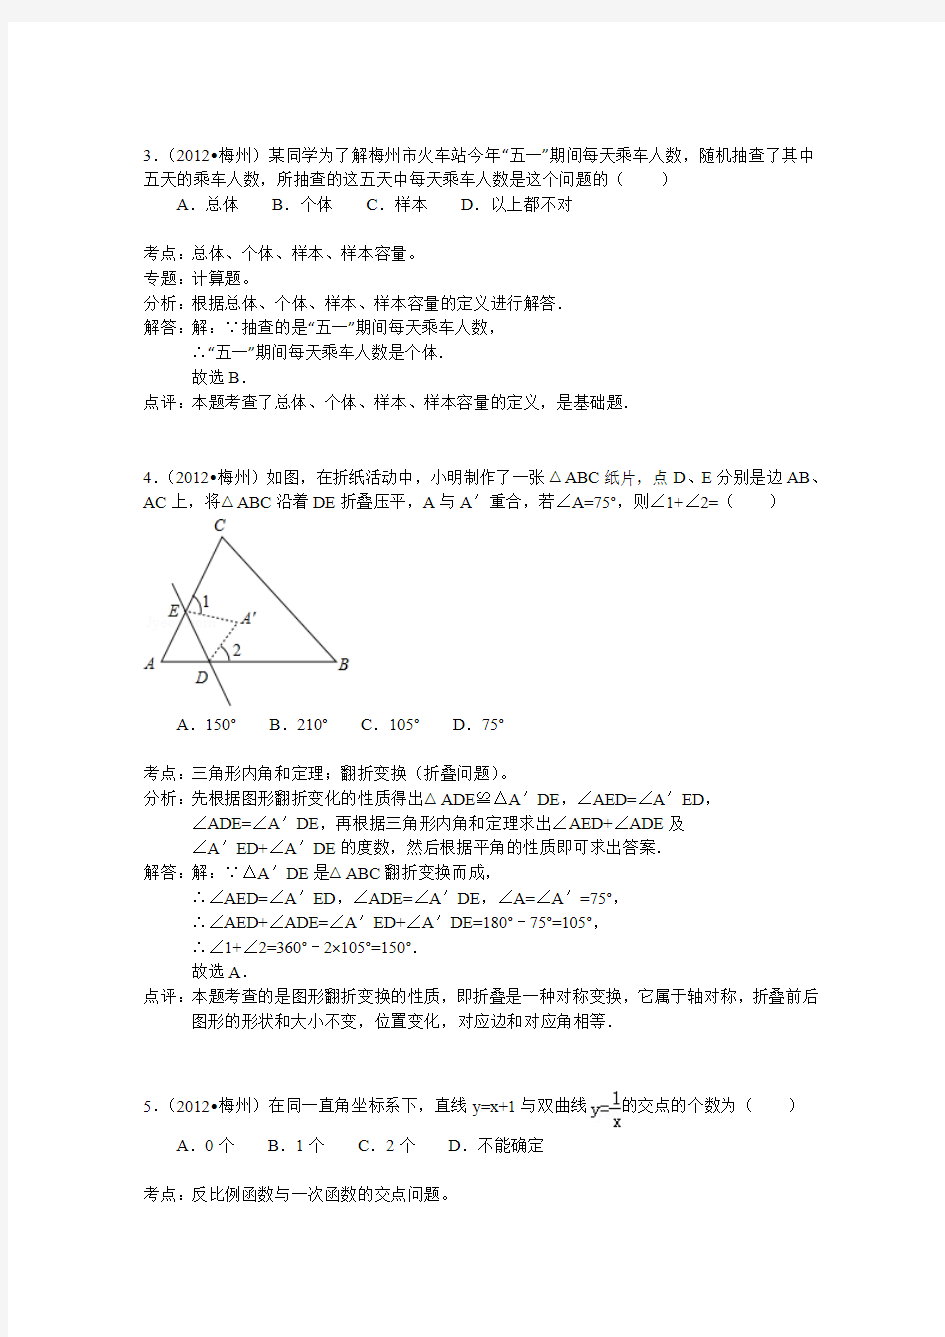 2012年初中毕业与升学统一考试数学试卷(广东梅州市)(详细解析)